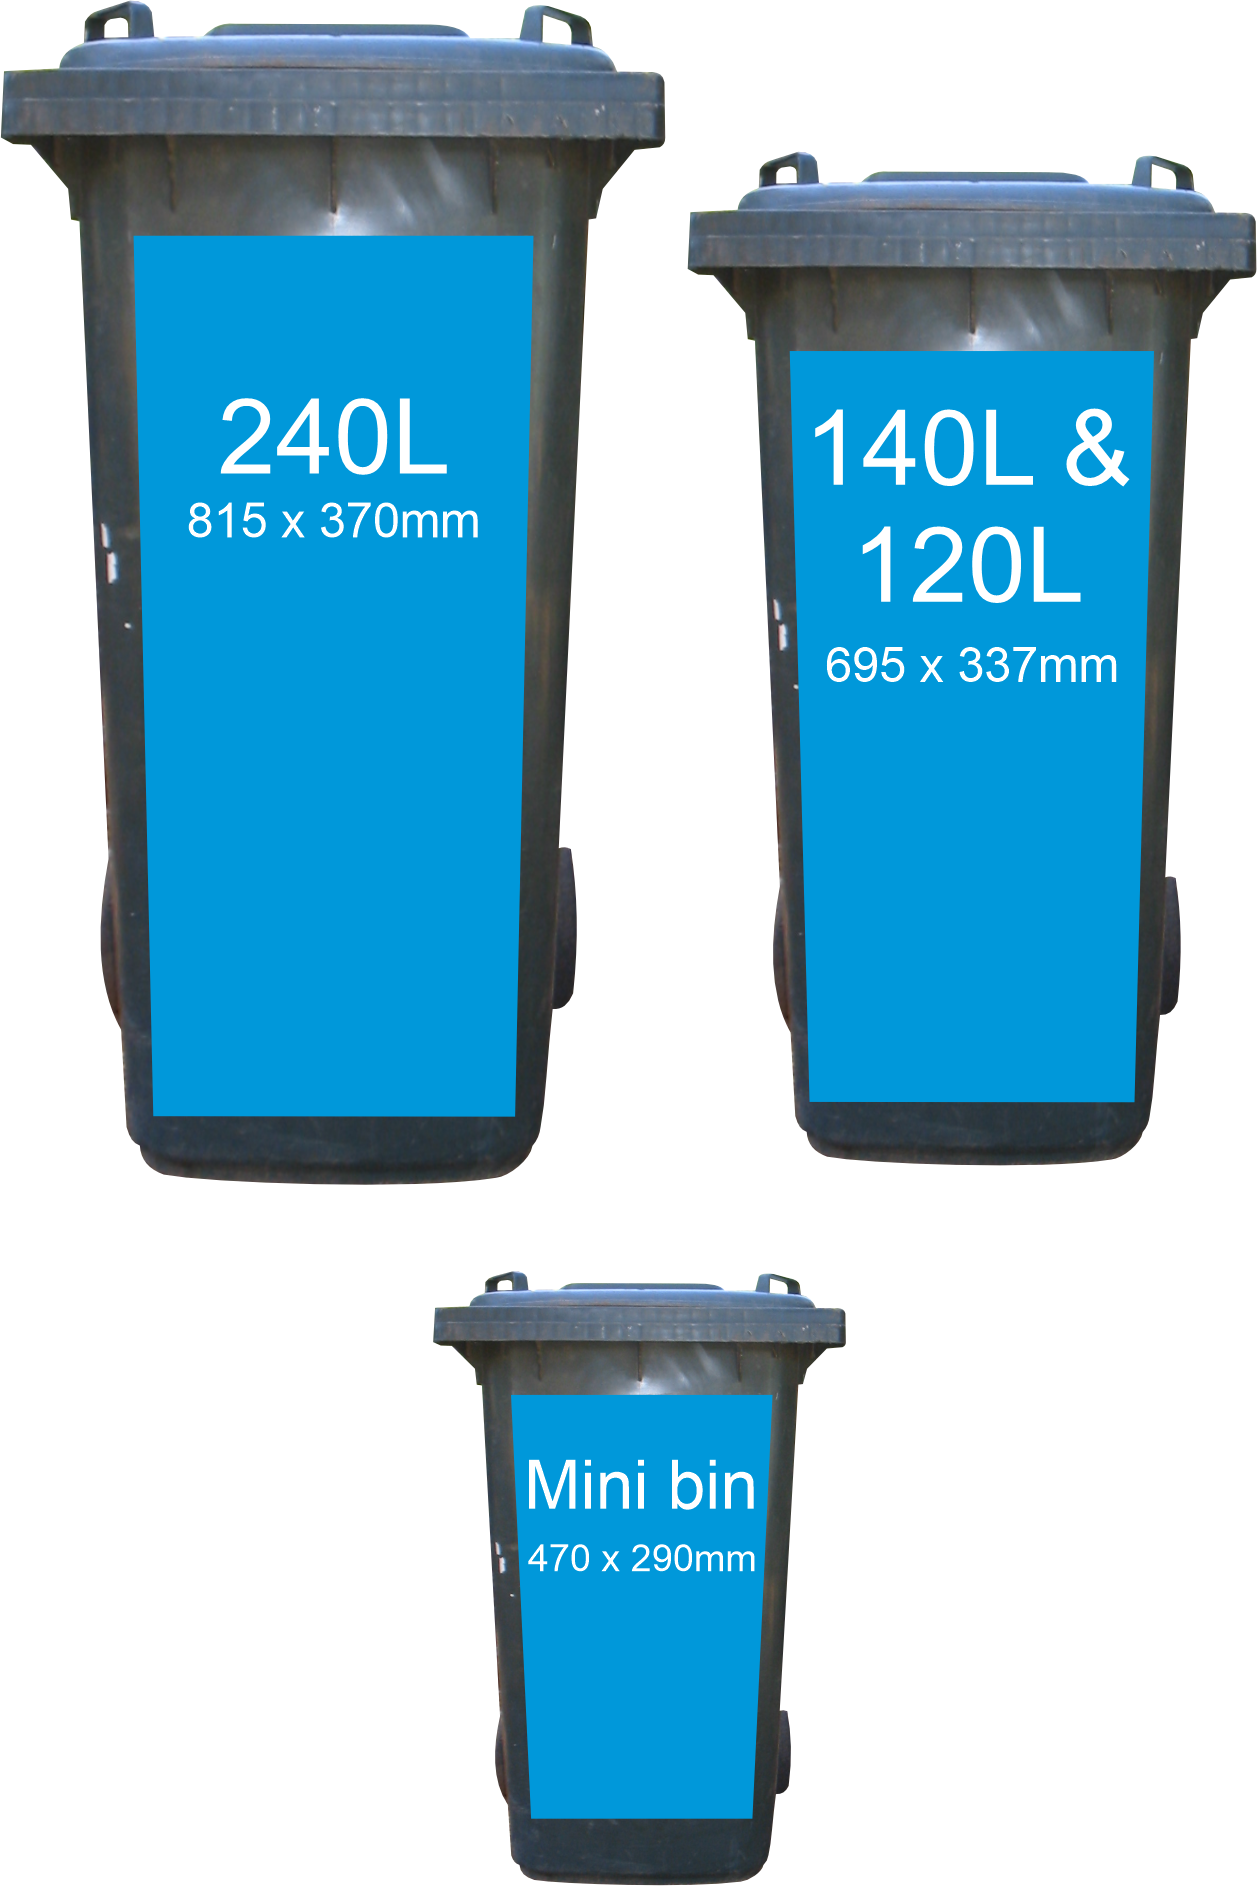 Bluey wheelie bin sticker in different size